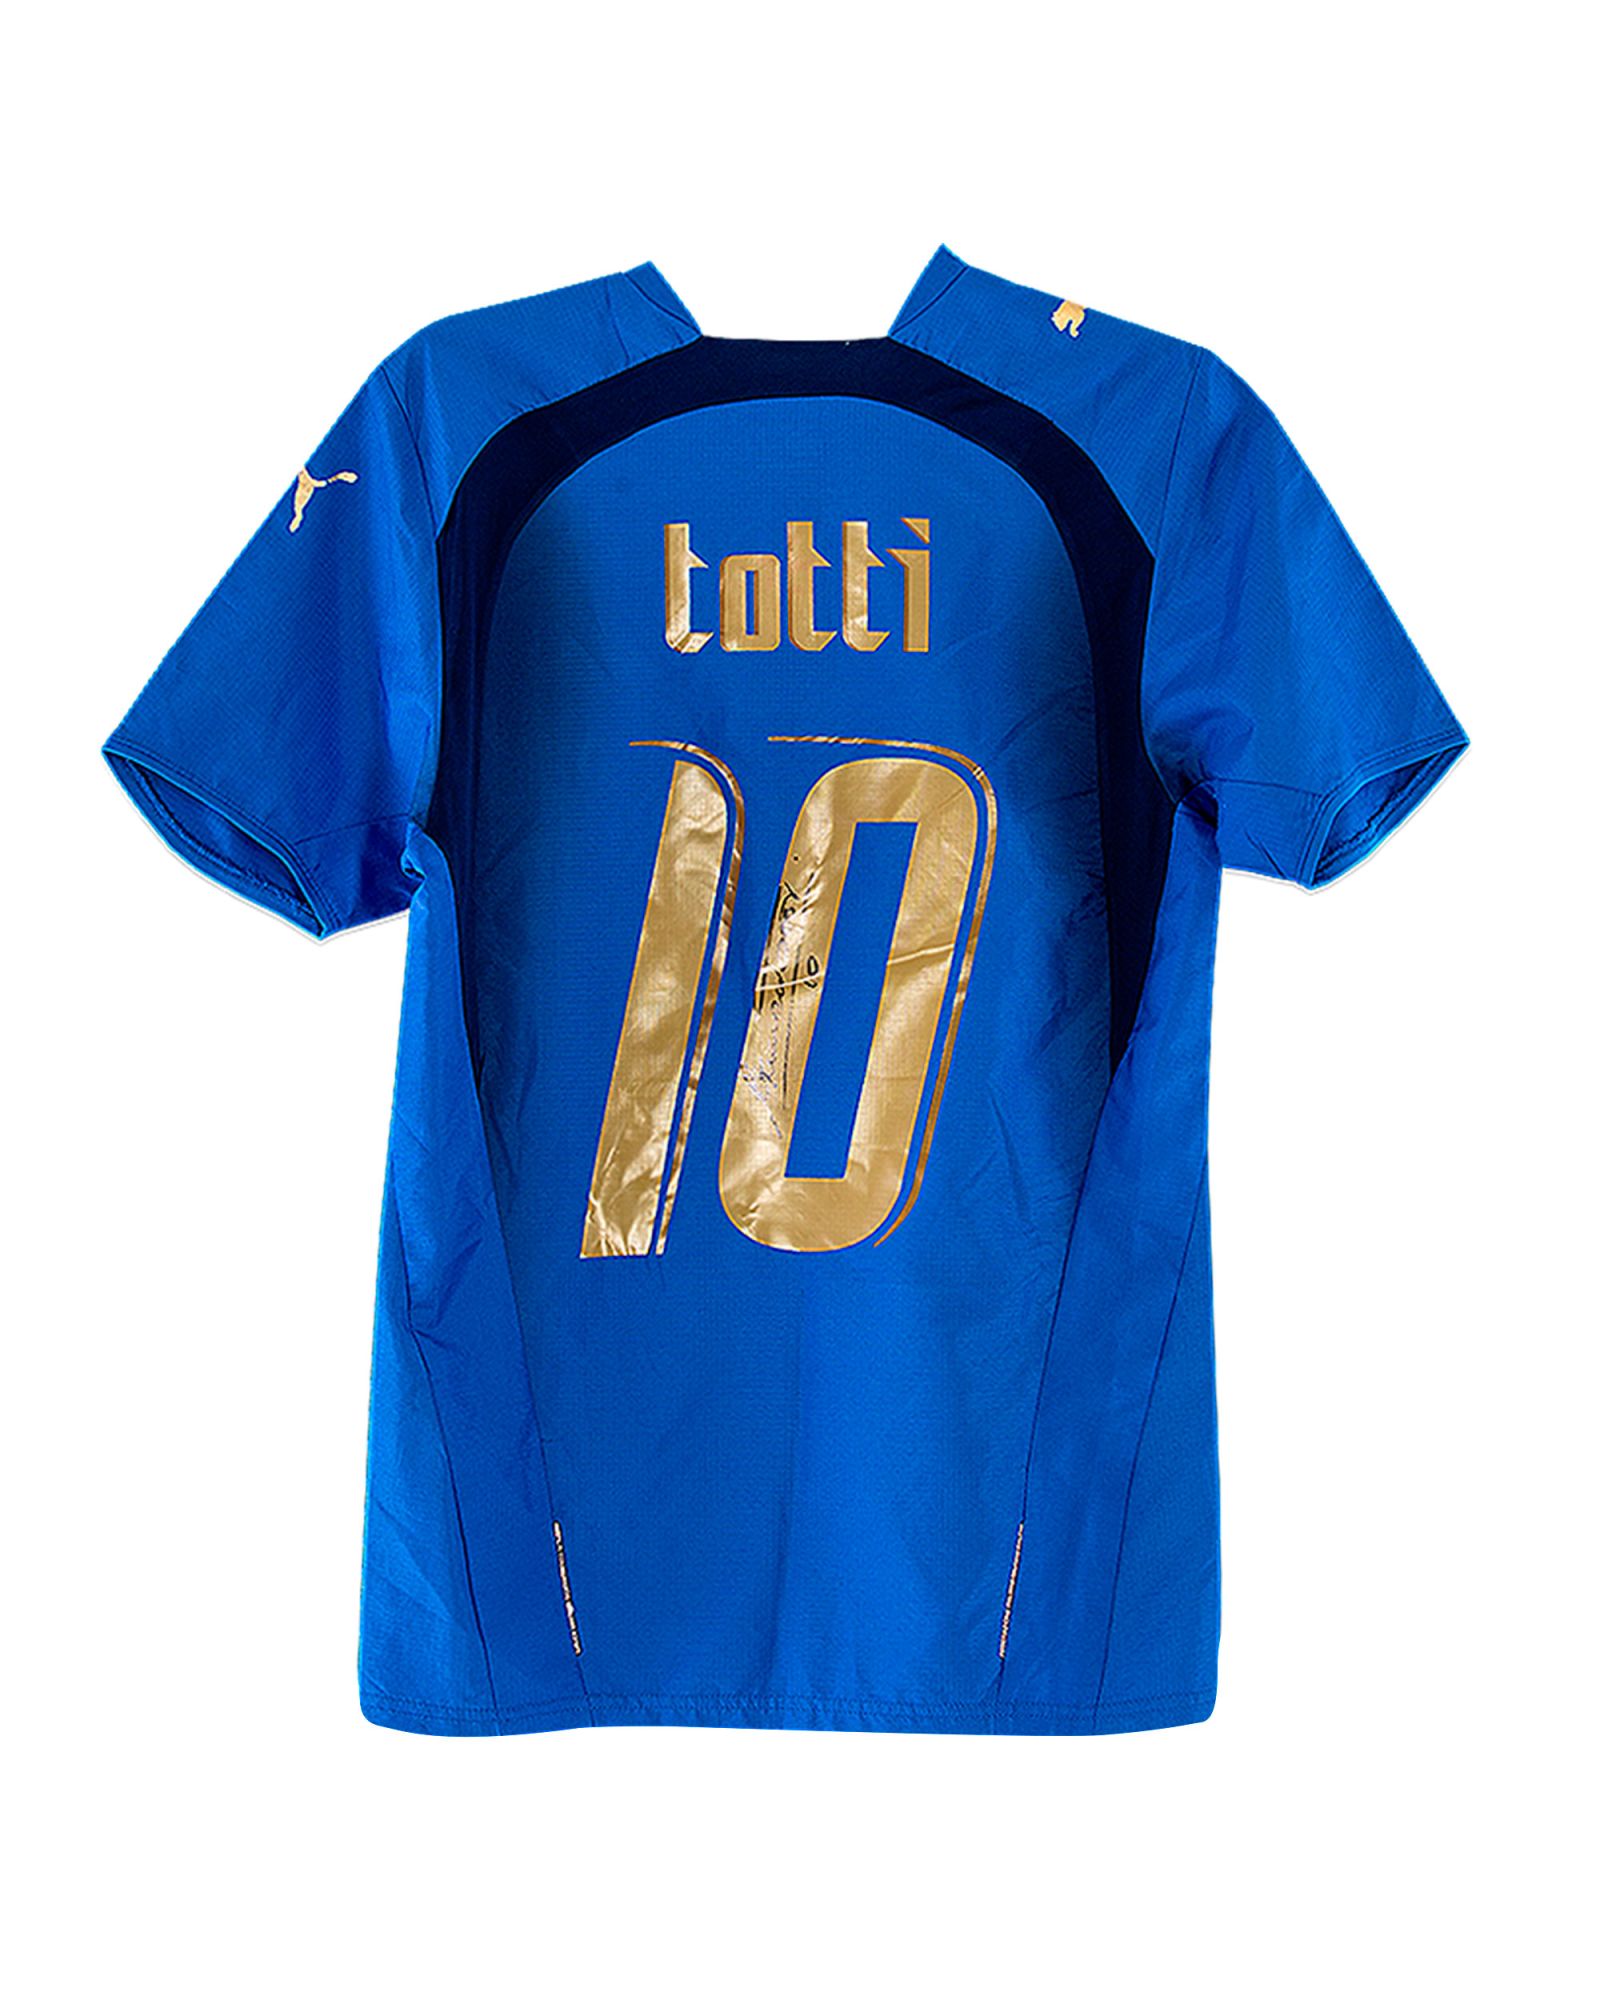 Camiseta Italia Mundial 2006 firmada Francesco Totti - Fútbol Factory